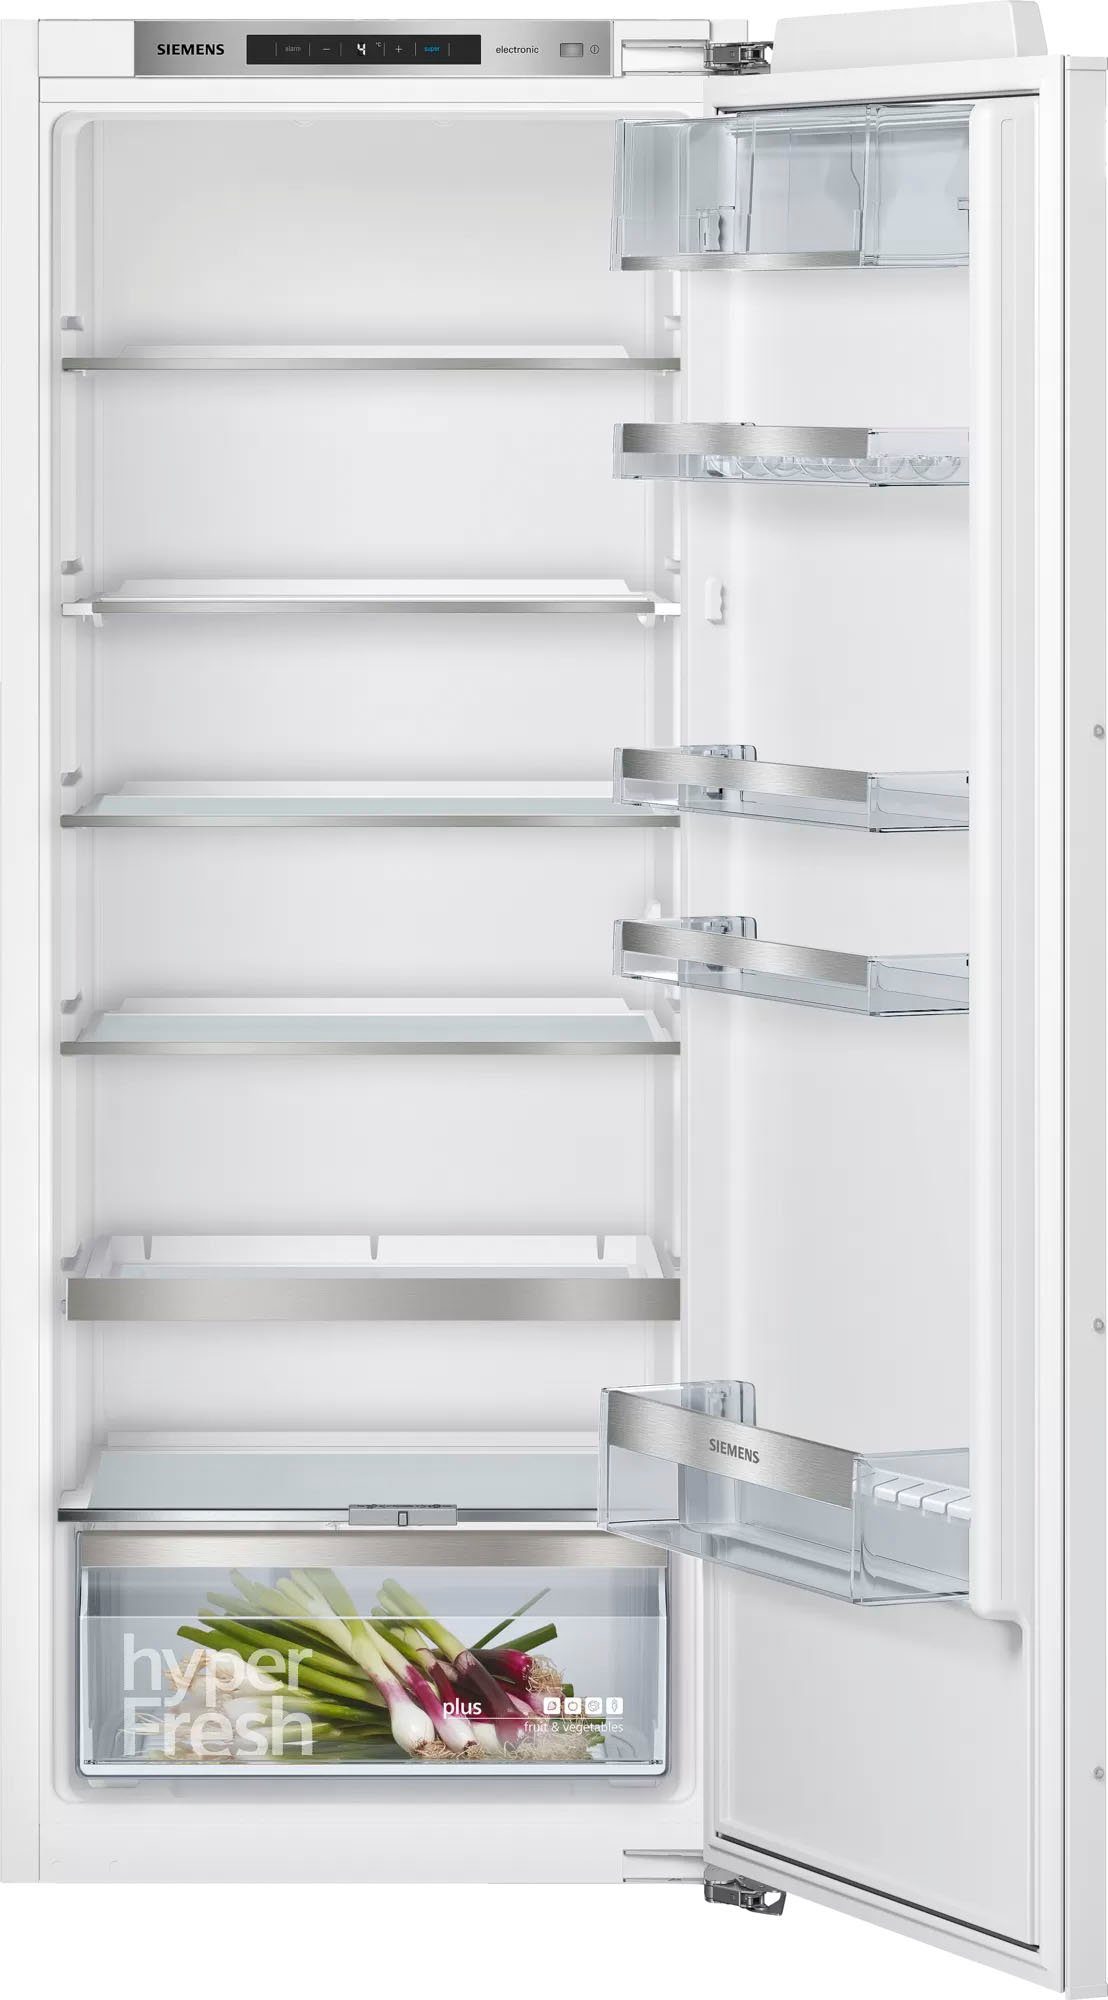 SIEMENS Einbaukühlschrank iQ500 KI51RADF0, 139,7 cm hoch, 55,8 cm breit  online kaufen | OTTO